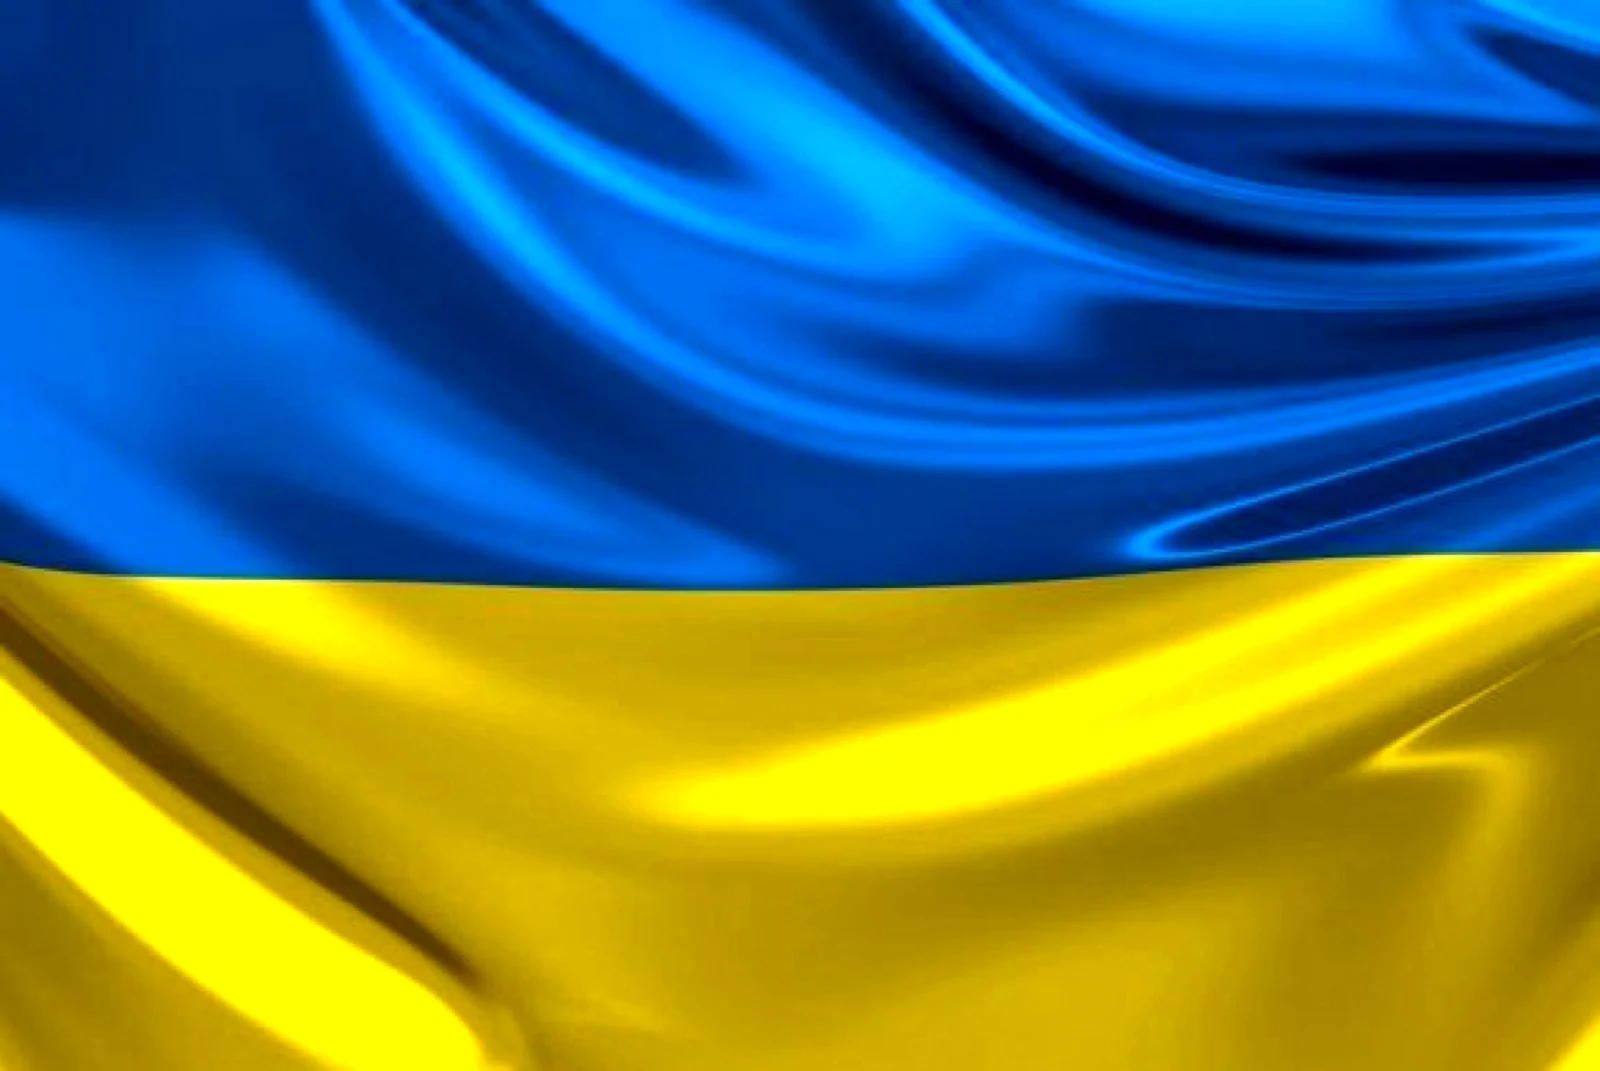 Украинский фон